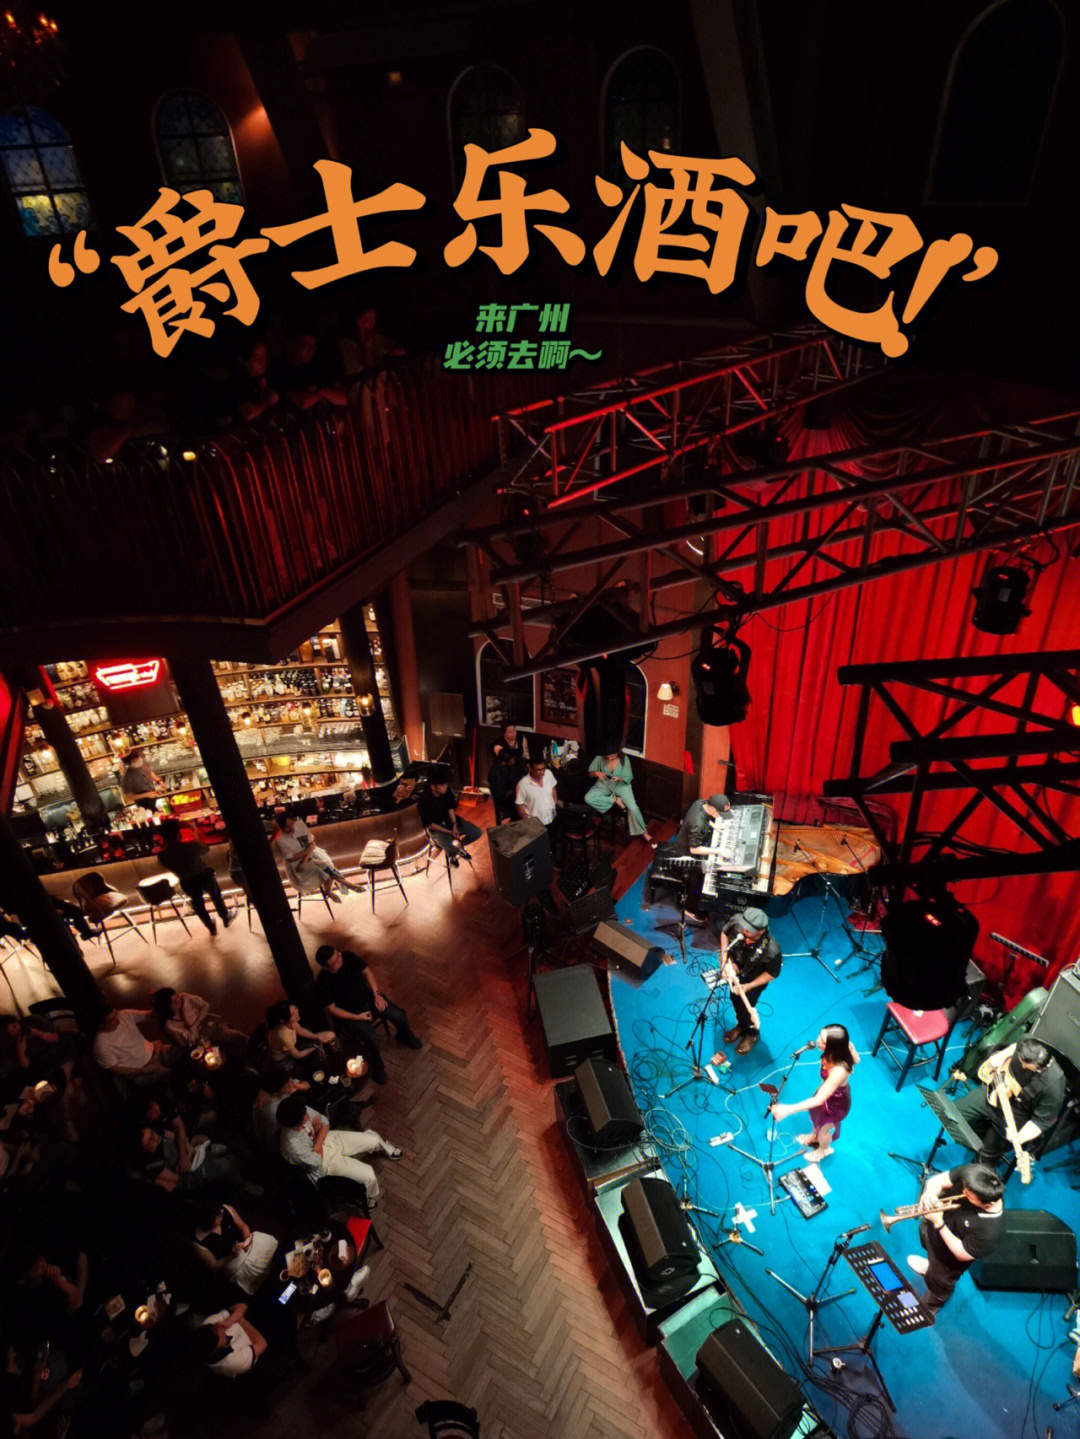 广州贵族club酒吧图片